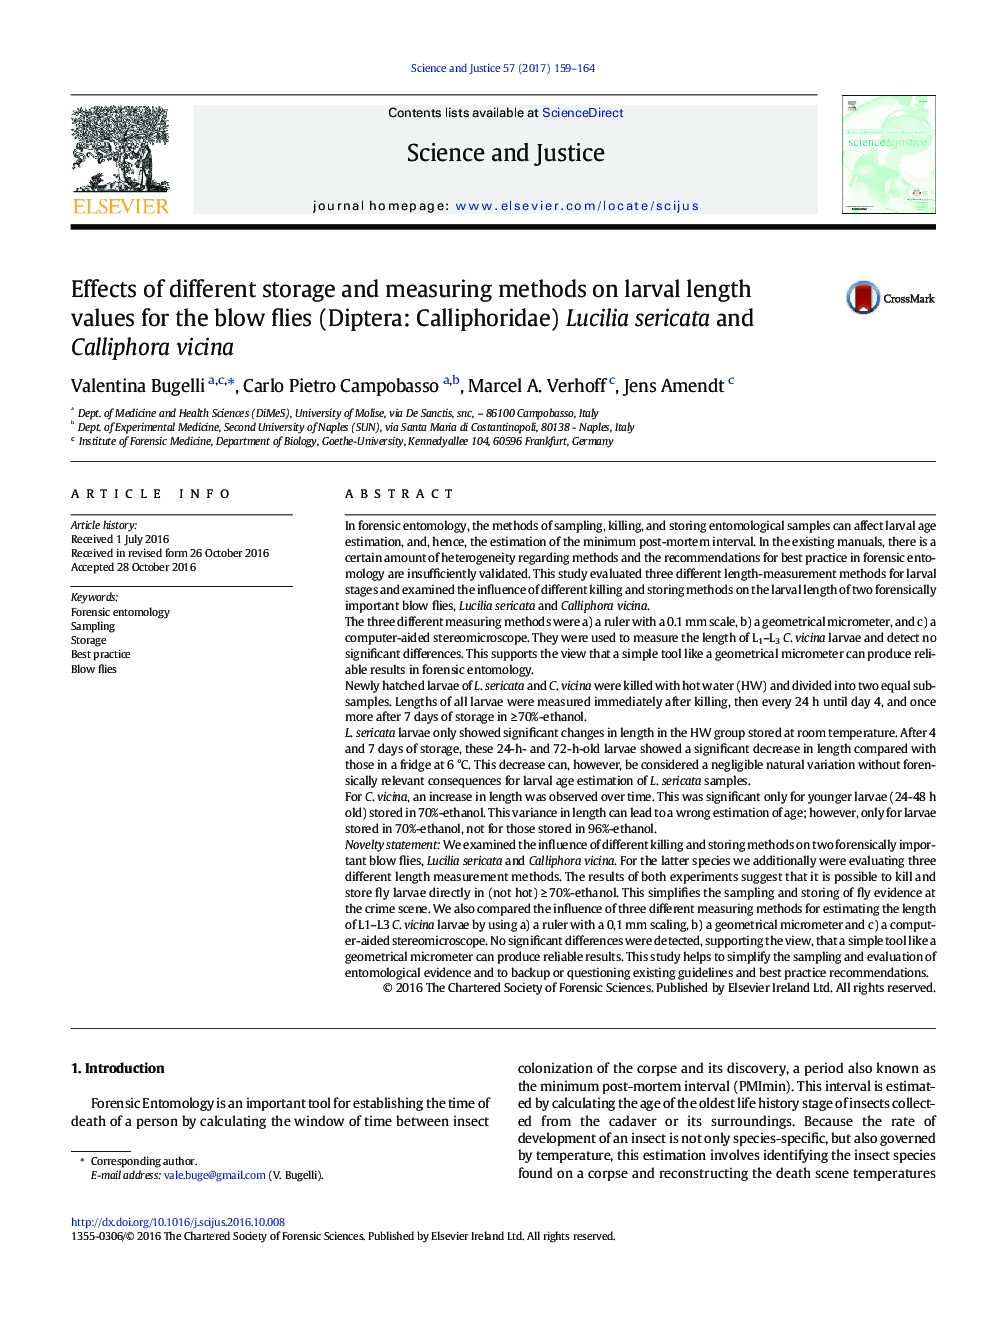 تأثیر روش های ذخیره سازی و اندازه گیری های مختلف بر روی طول لارو برای موش صحرایی (Diptera: Calliphoridae) Lucilia sericata و Calliphora vicina